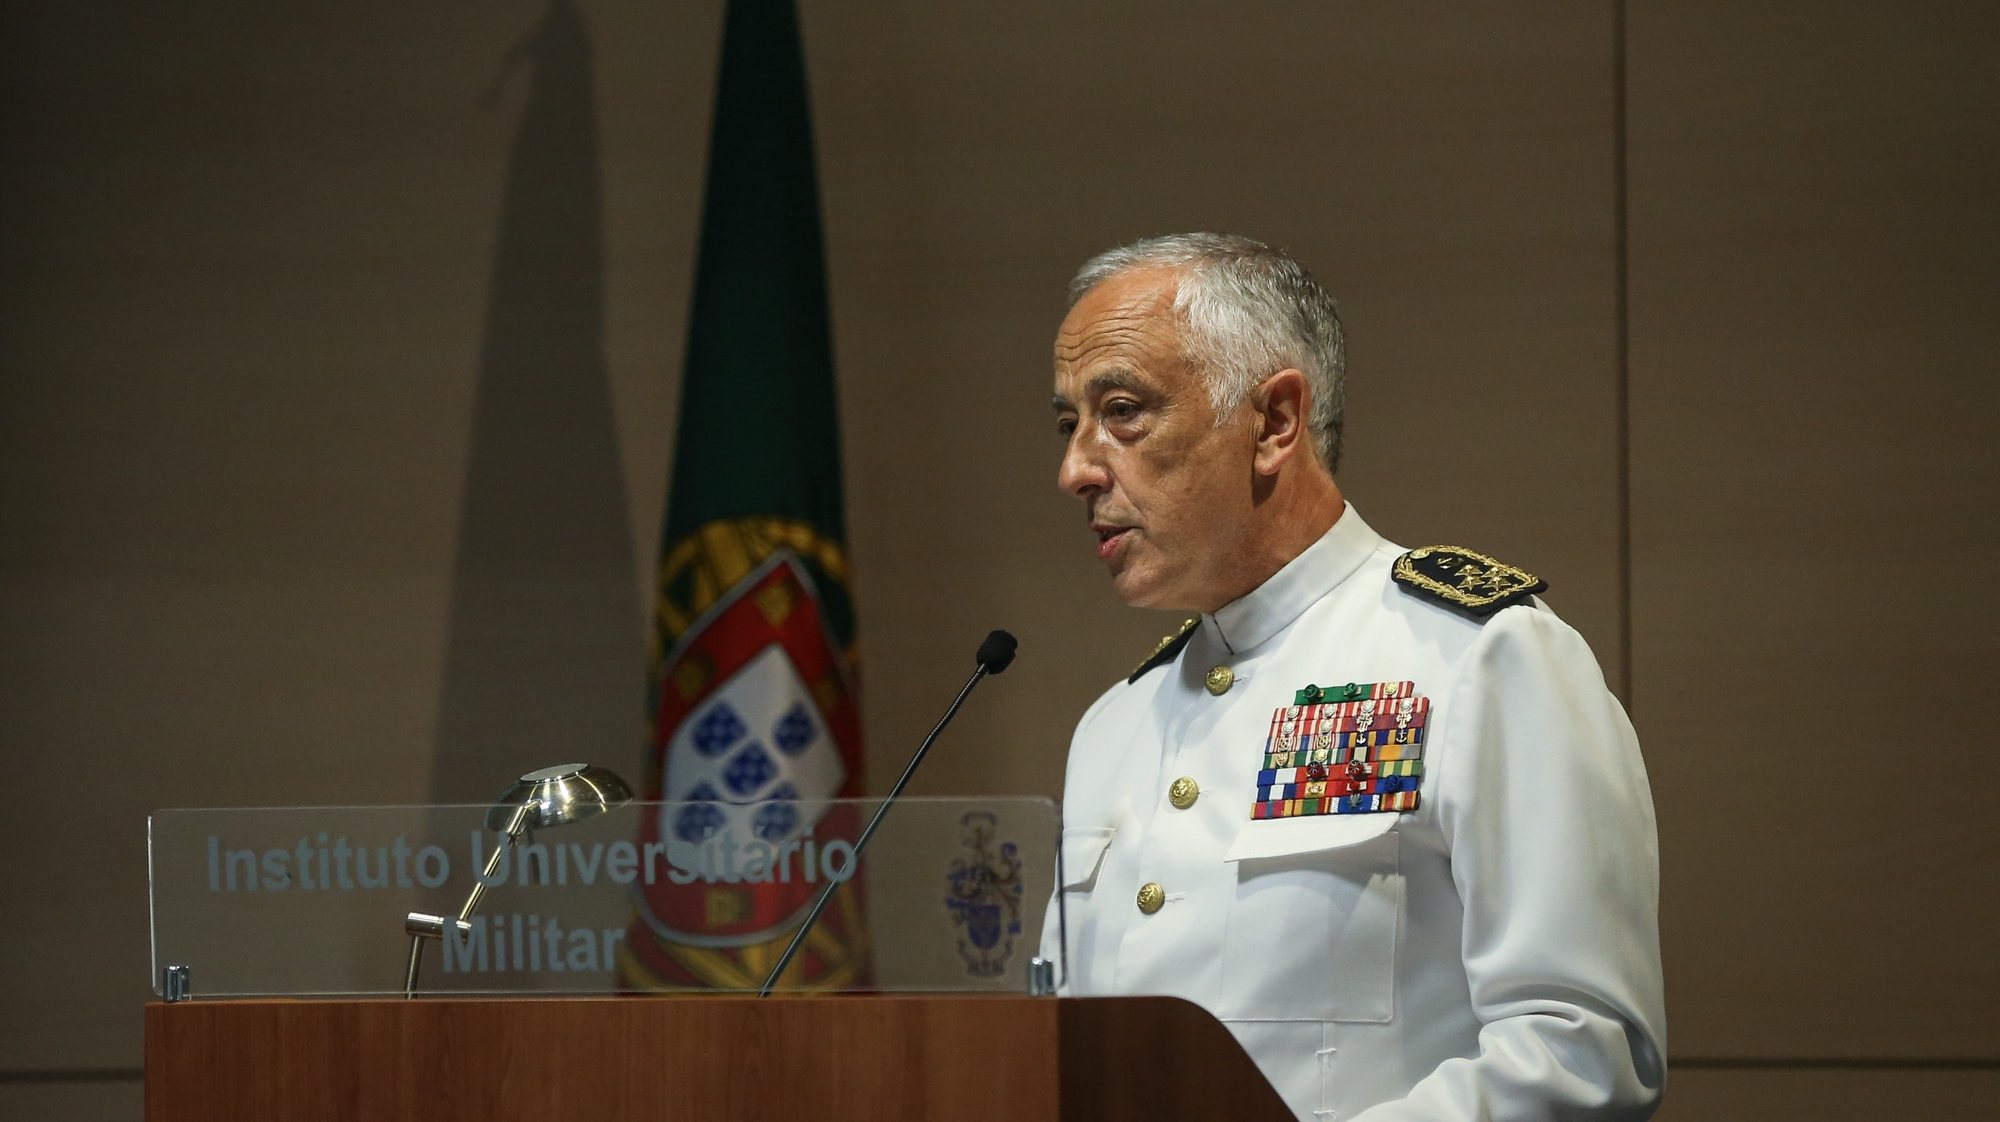 O Chefe do Estado-Maior-General das Forças Armadas, Almirante António Silva Ribeiro, discursa na cerimónia das comemorações do Dia do Estado-Maior-General das Forças Armadas, no Instituto Universitário Militar, em Lisboa, 14 de setembro de 2021.  RODRIGO ANTUNES/LUSA